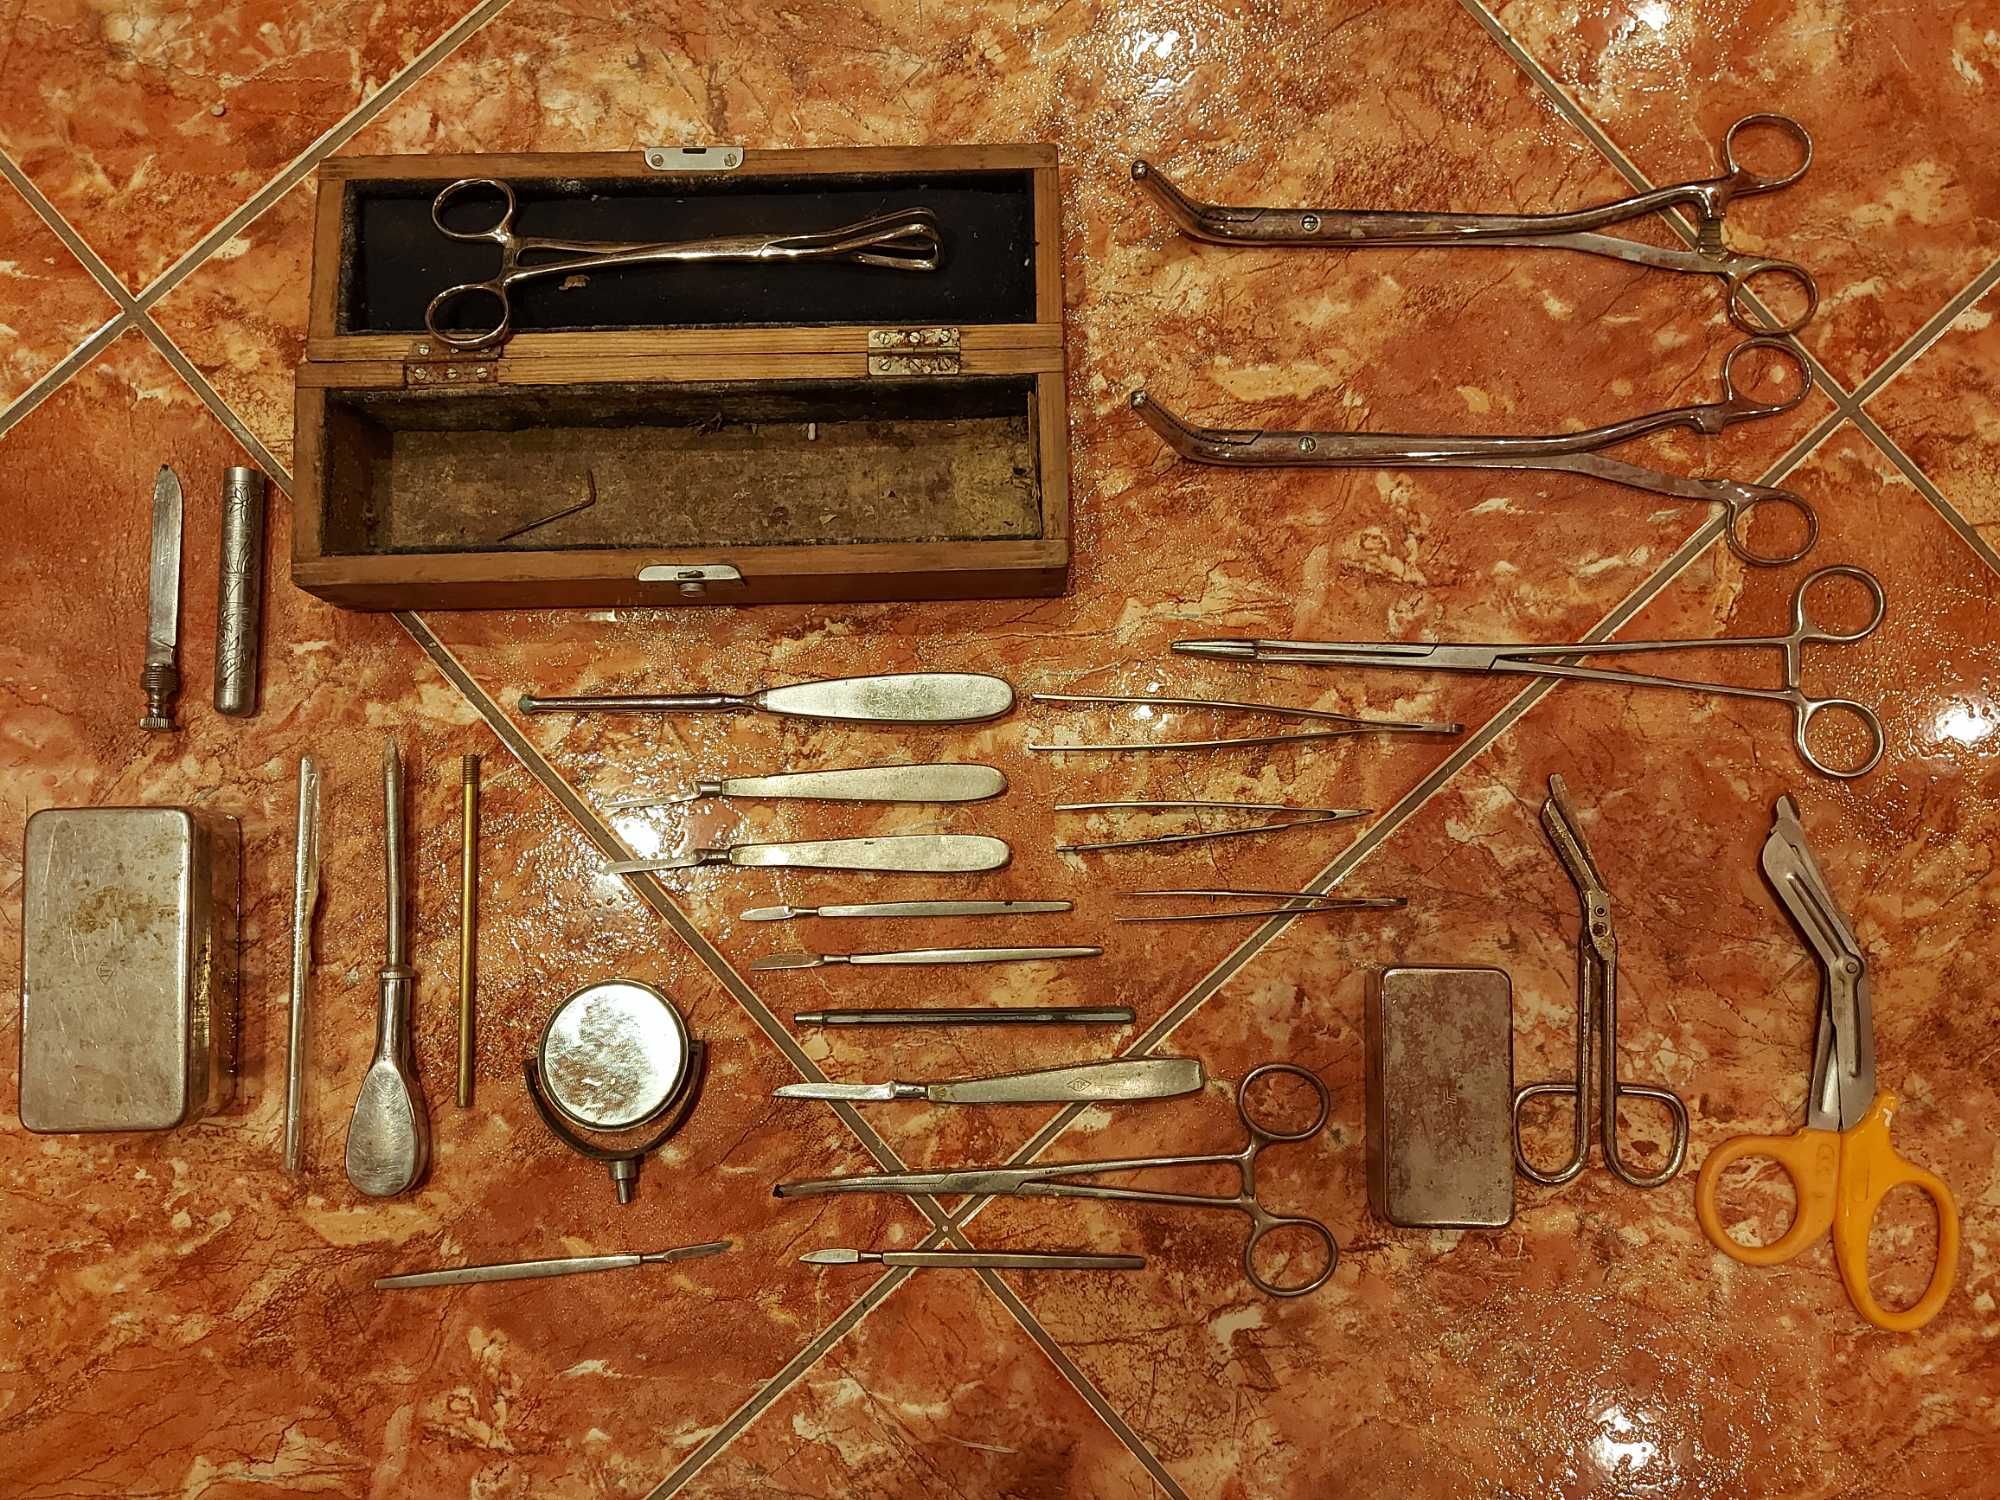 Instrumente Rare spital vechi din comunism armata militare vintage